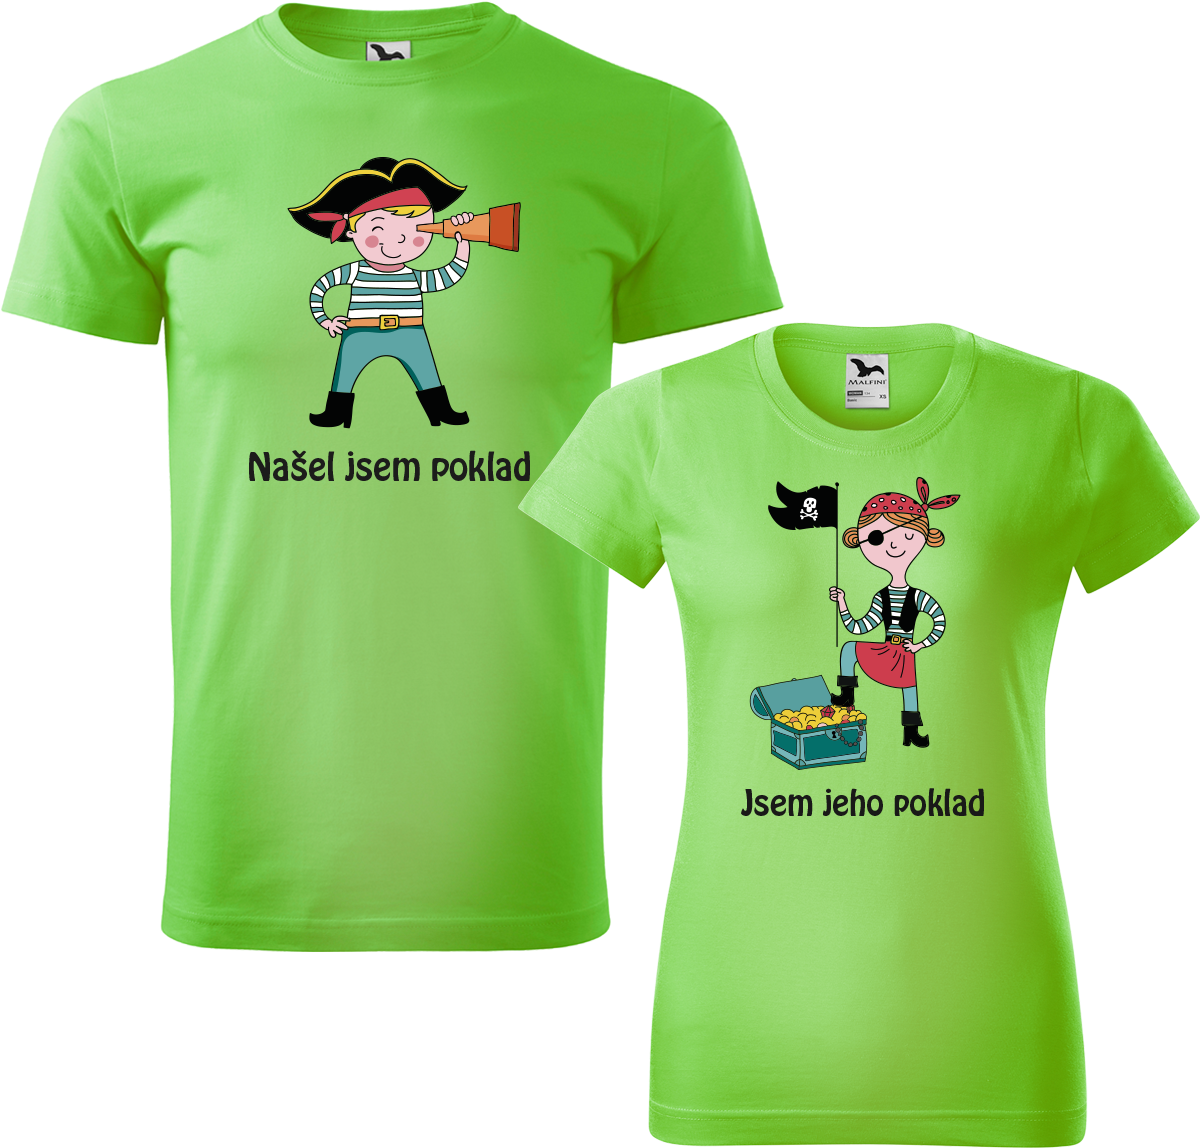 Trička pro páry - Poklad Barva: Apple Green (92), Velikost dámské tričko: M, Velikost pánské tričko: M